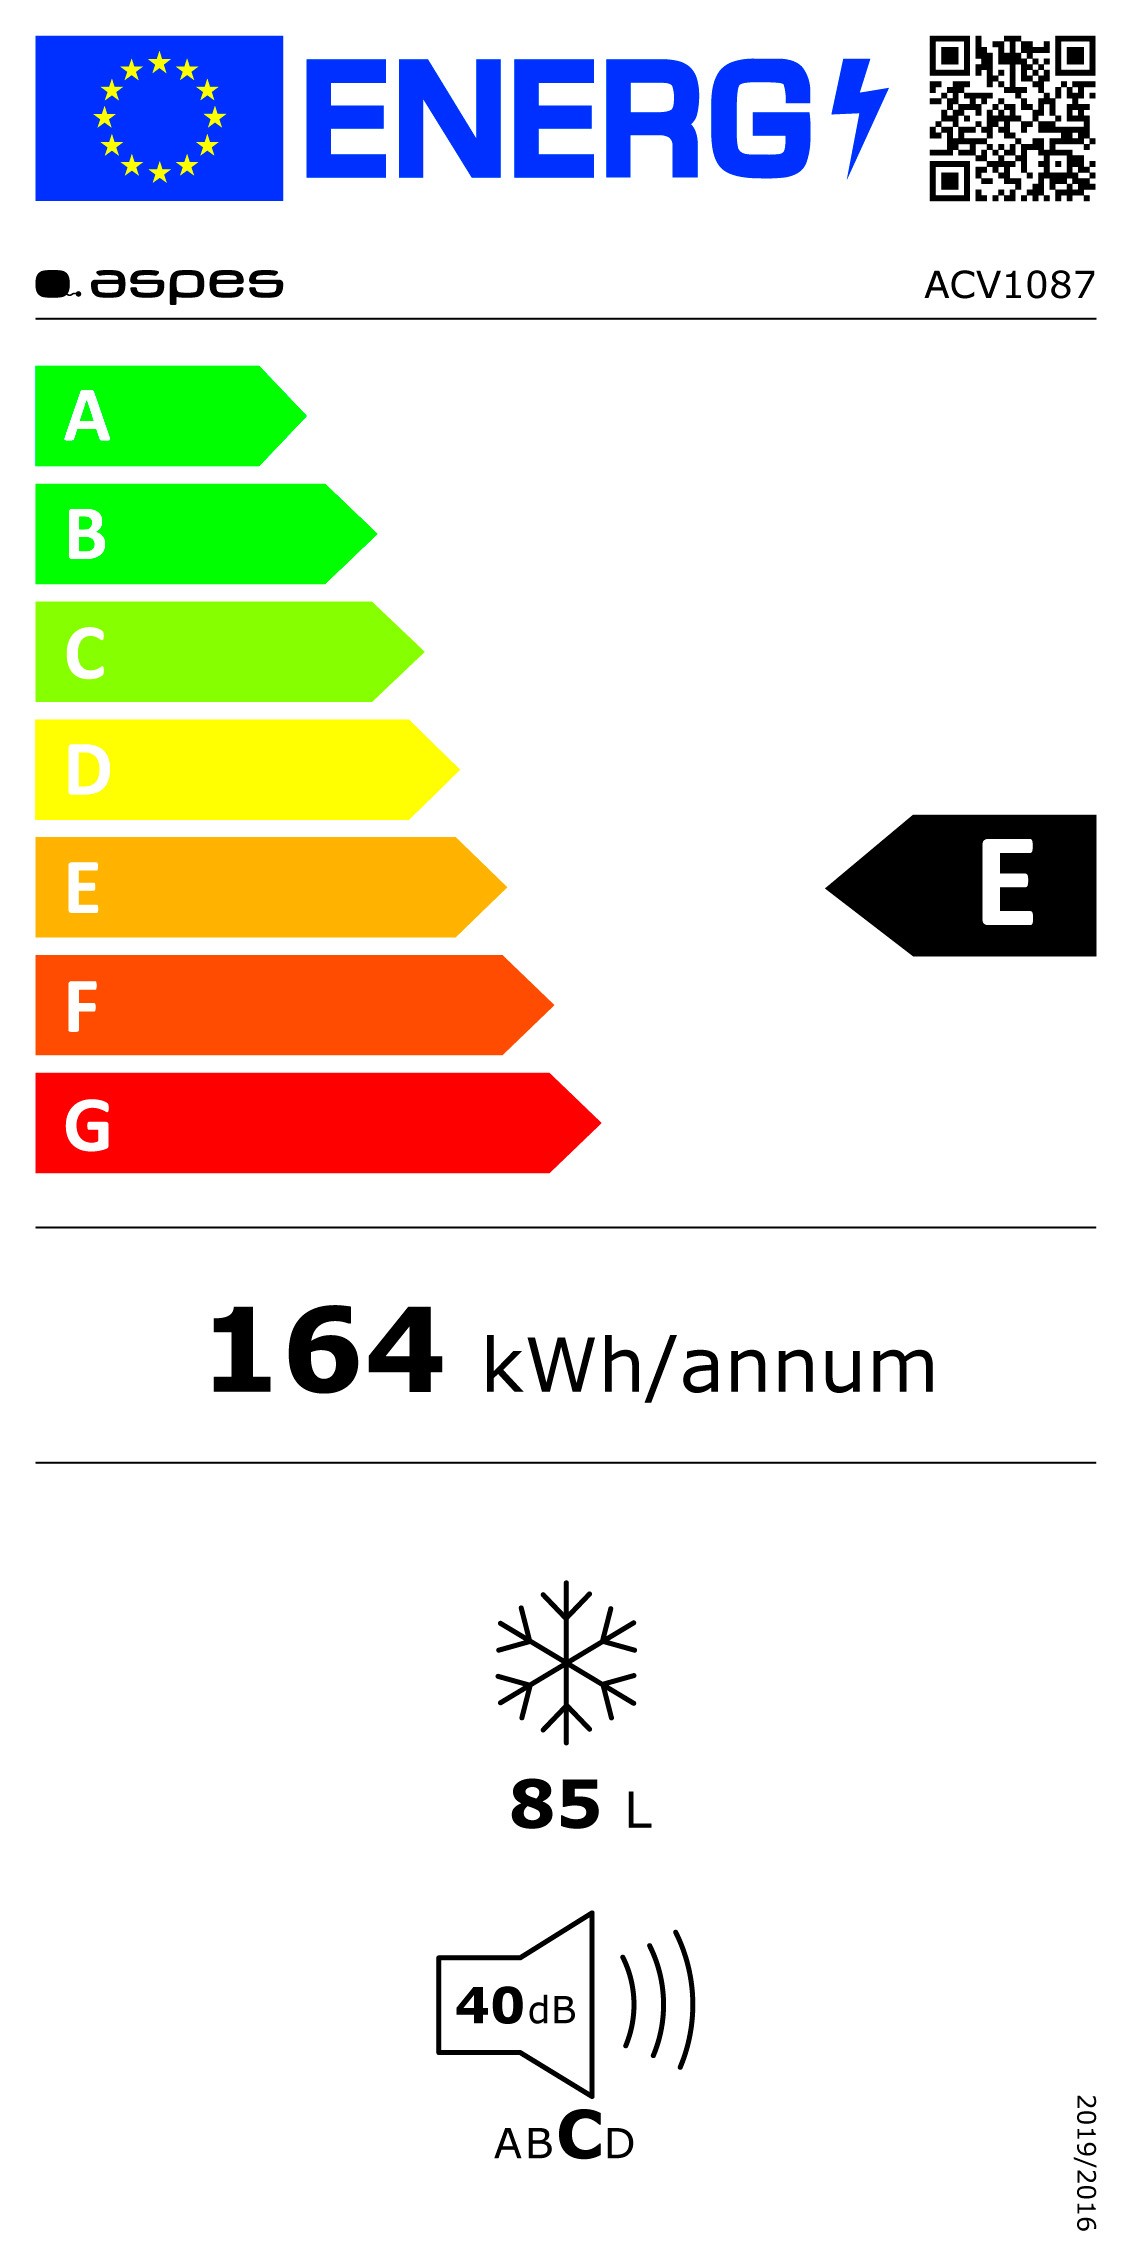 Etiqueta de Eficiencia Energética - ACV1087